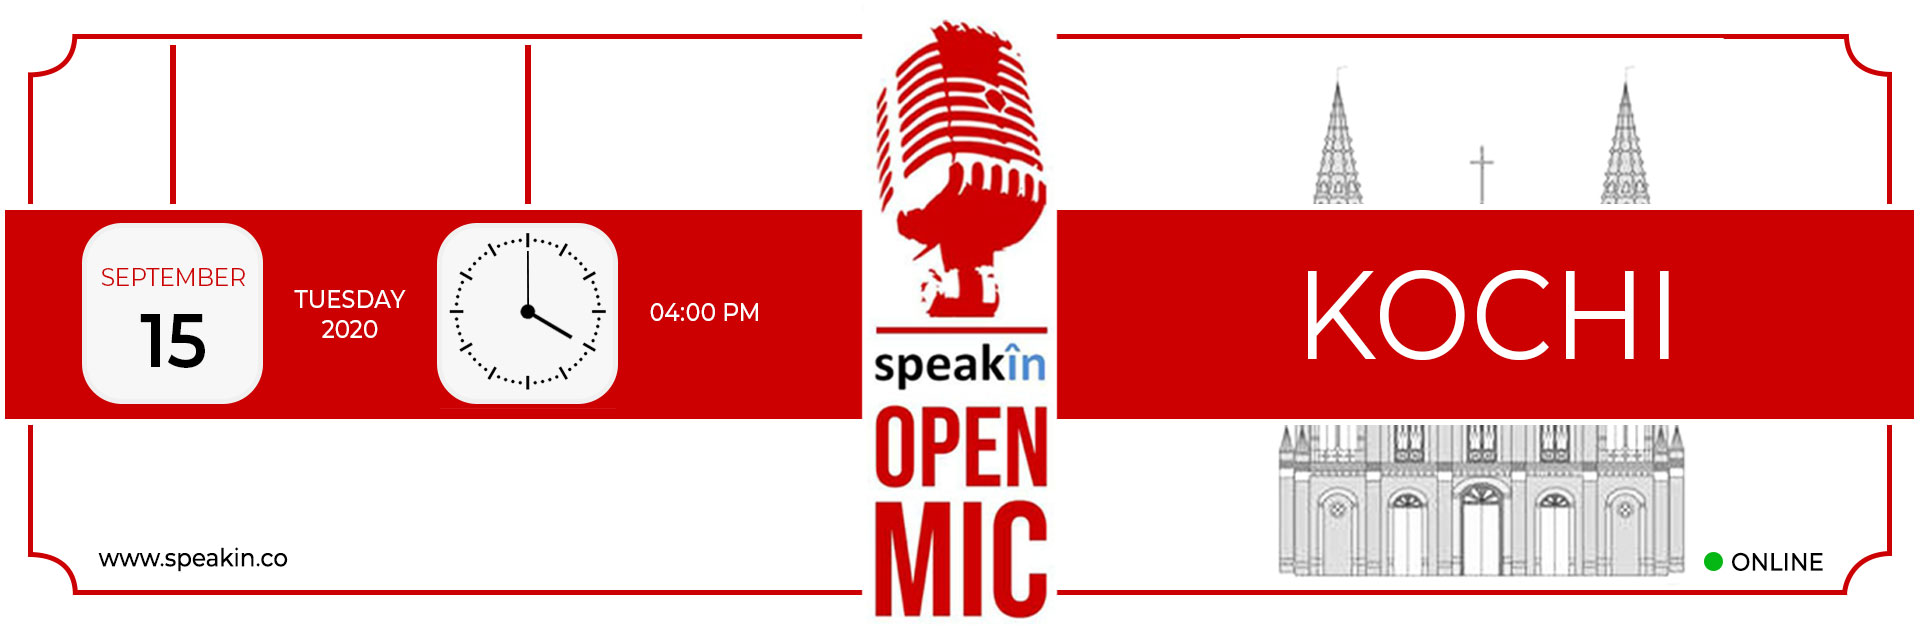 SpeakIn Open Mic – Kochi